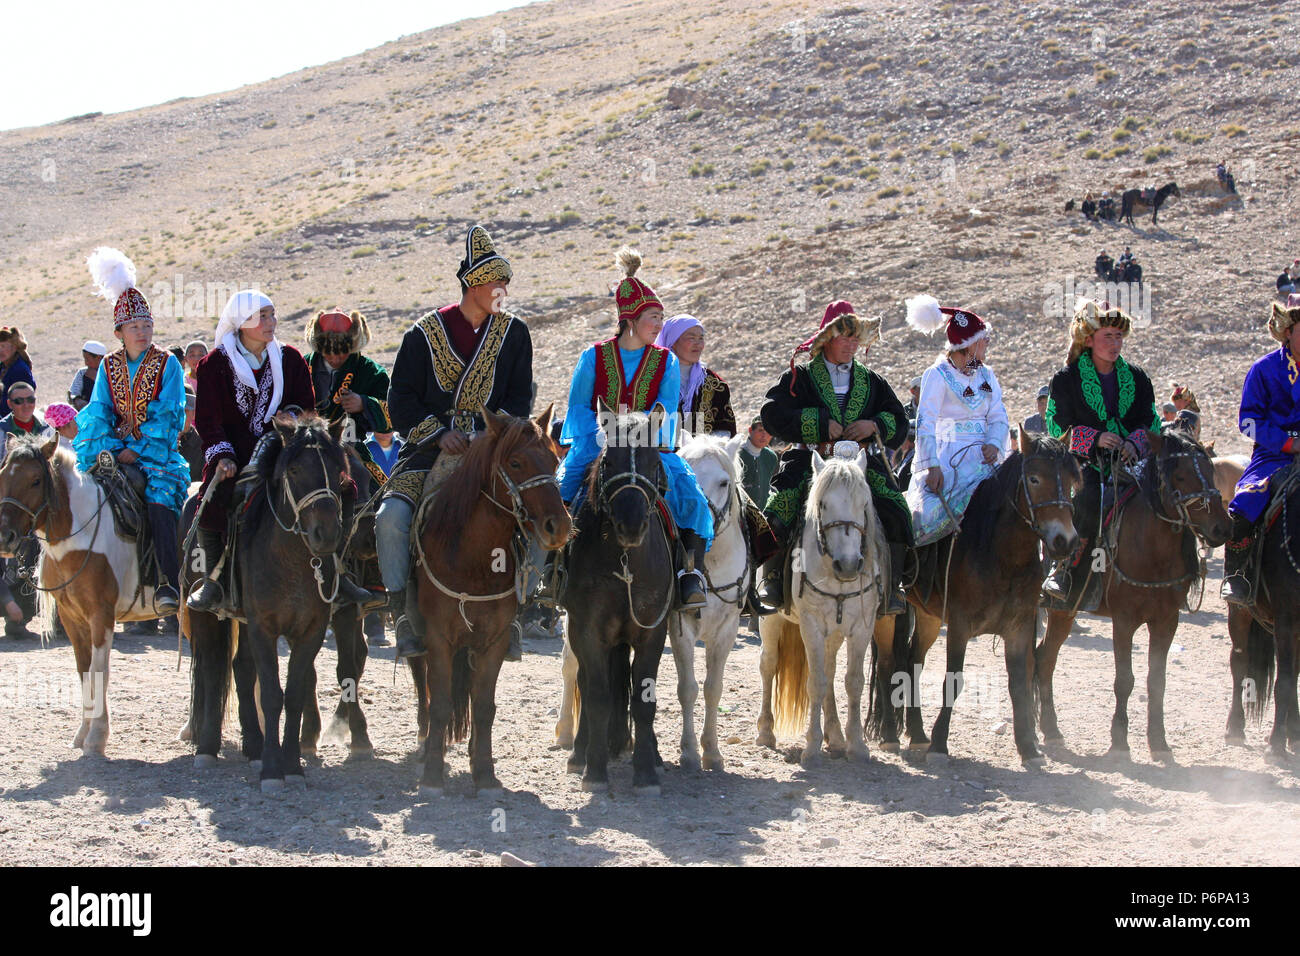 Mongolie - 25 juillet : cavaliers mongols en costume traditionnel avec l'aigle royal lors de la fête de l'Aigle royal Nom 'Festival' Juillet Banque D'Images